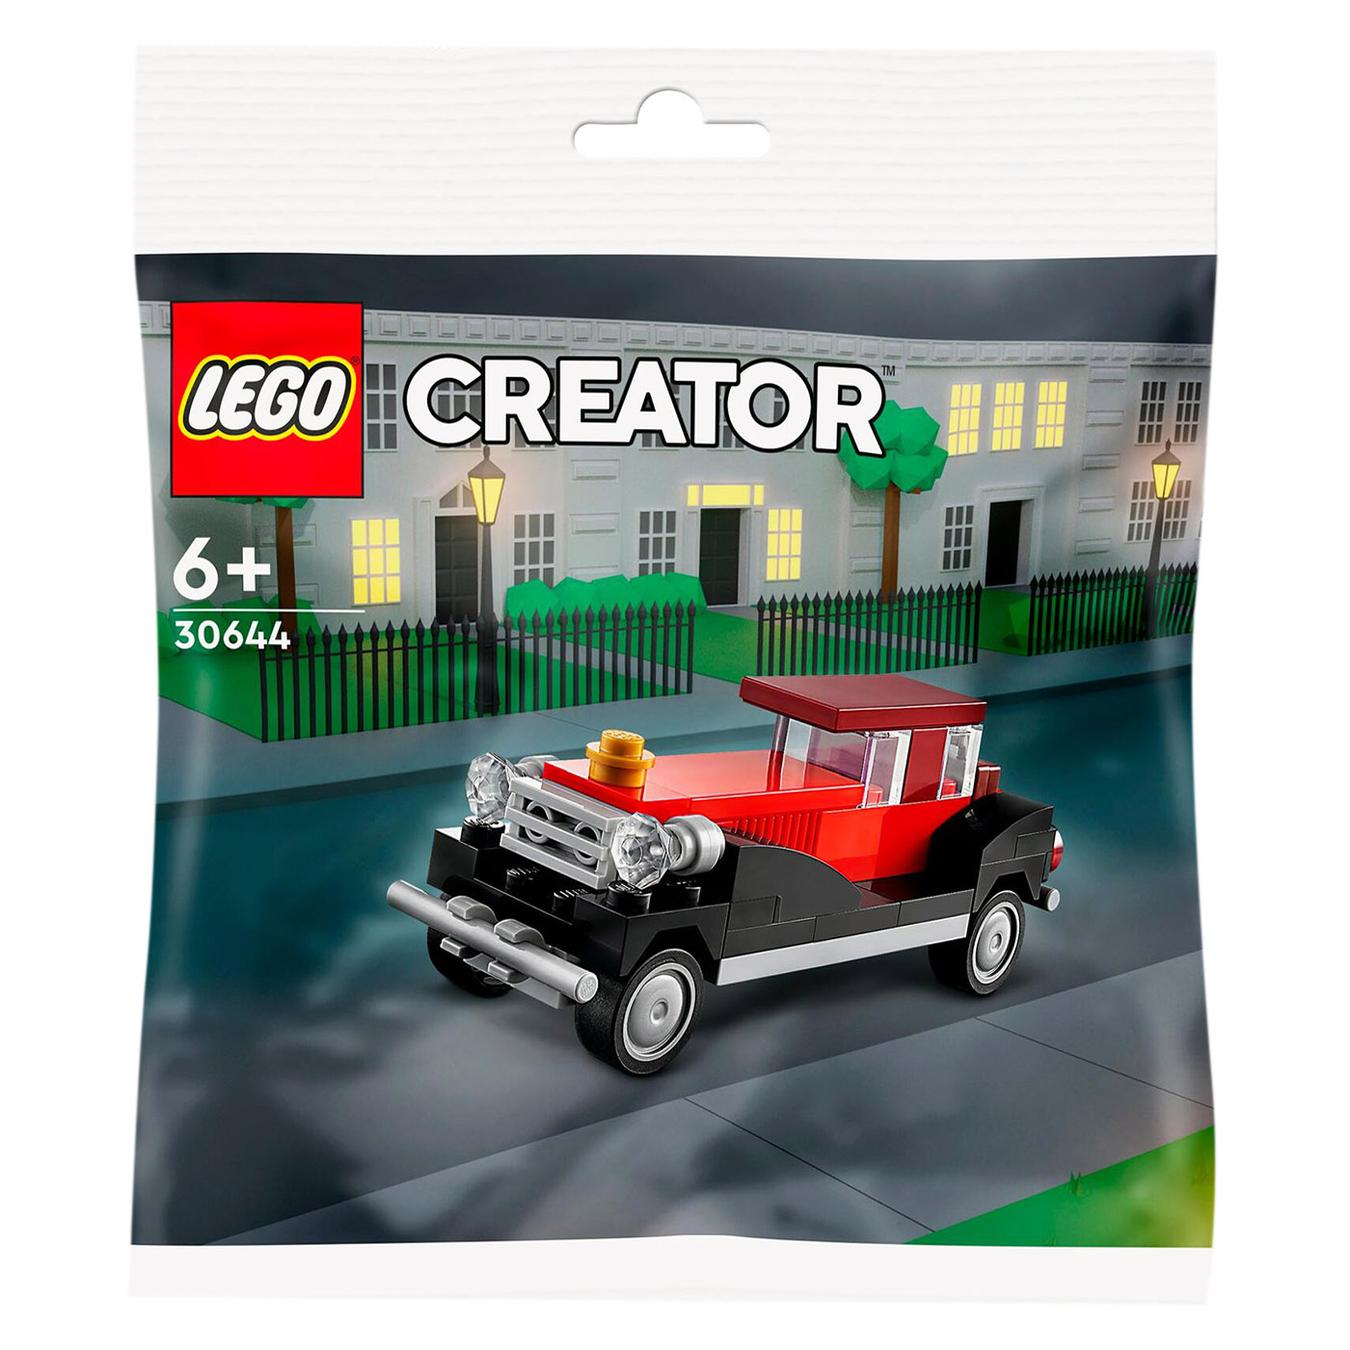 Constructor LEGO Vintage car